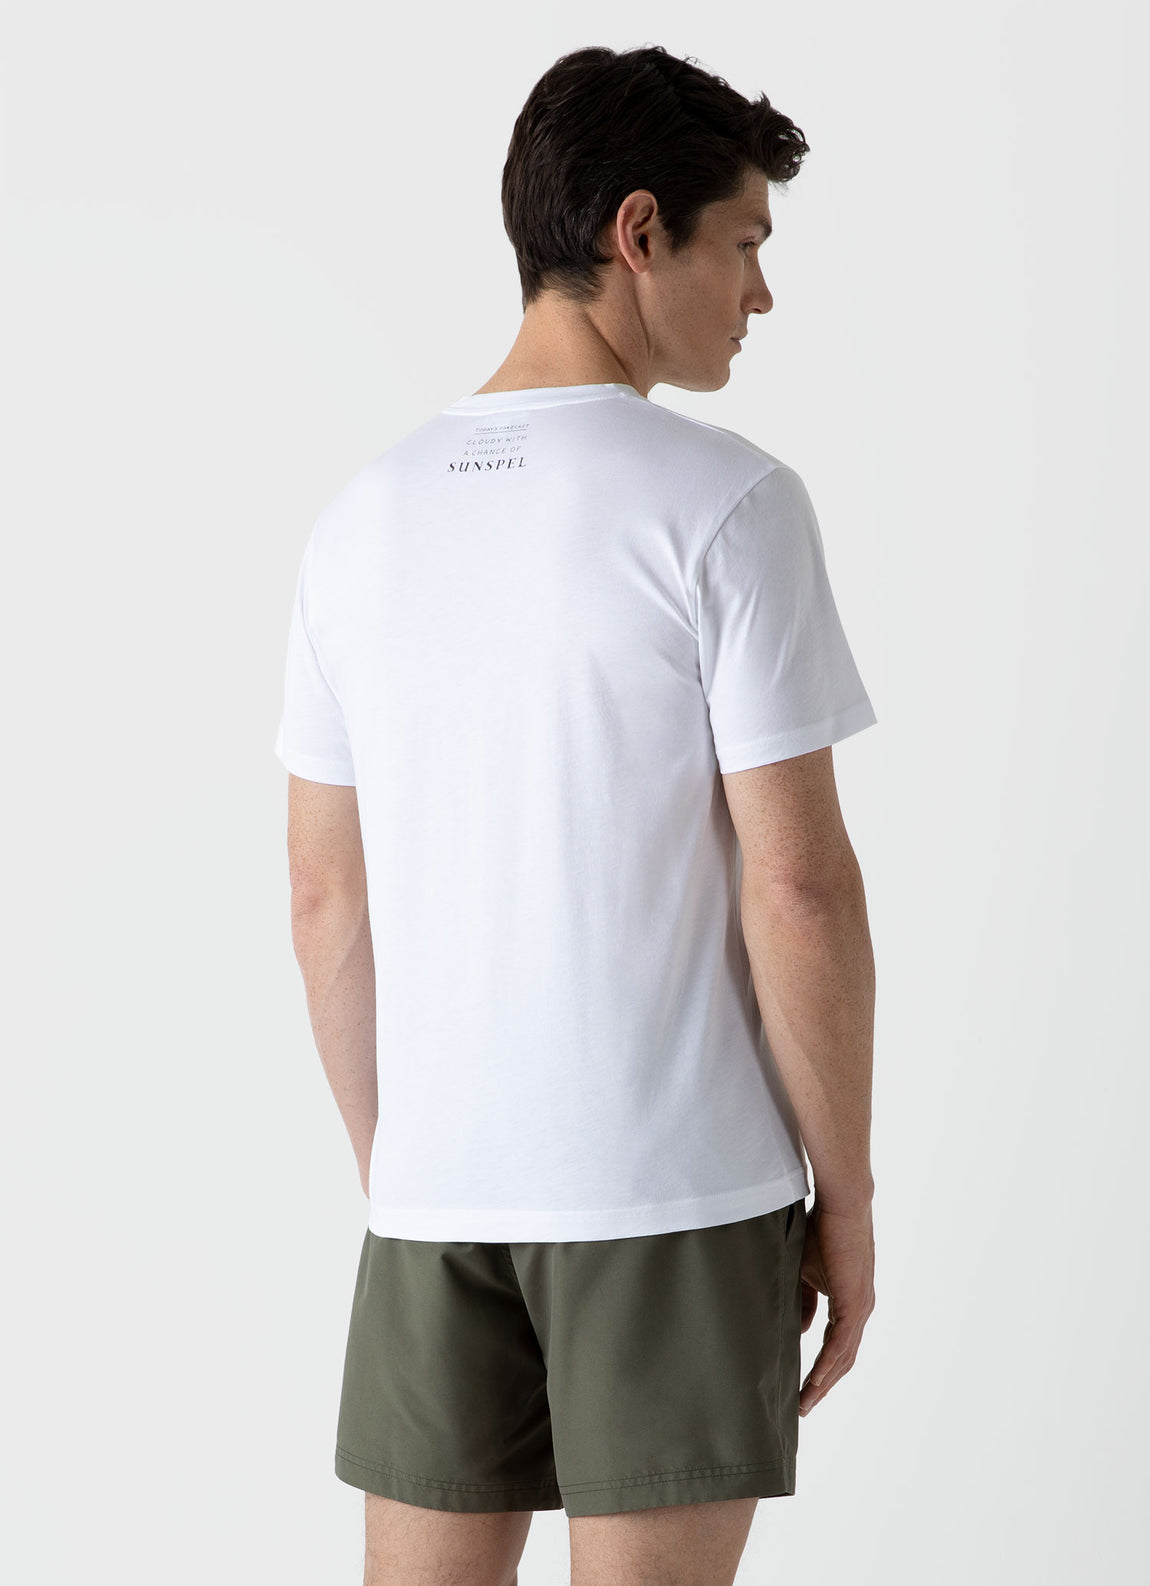 Men's Matt Blease Print T-shirt in White